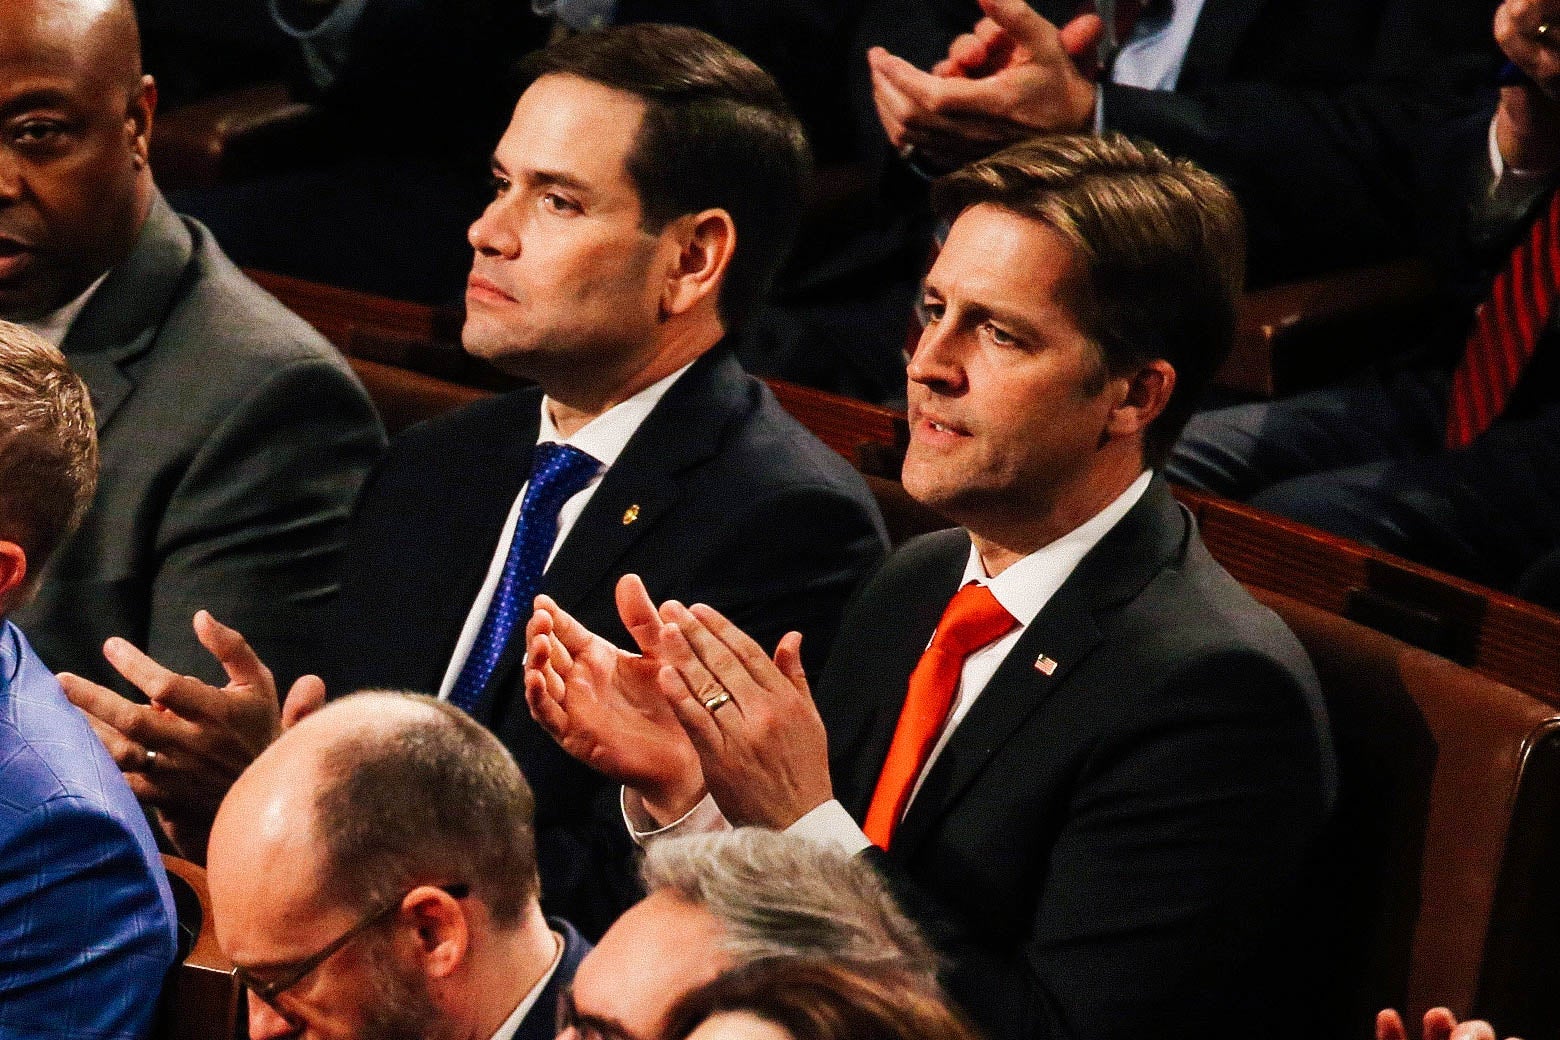 Sasse claps while seated on a bench next to Florida Sen. Marco Rubio.